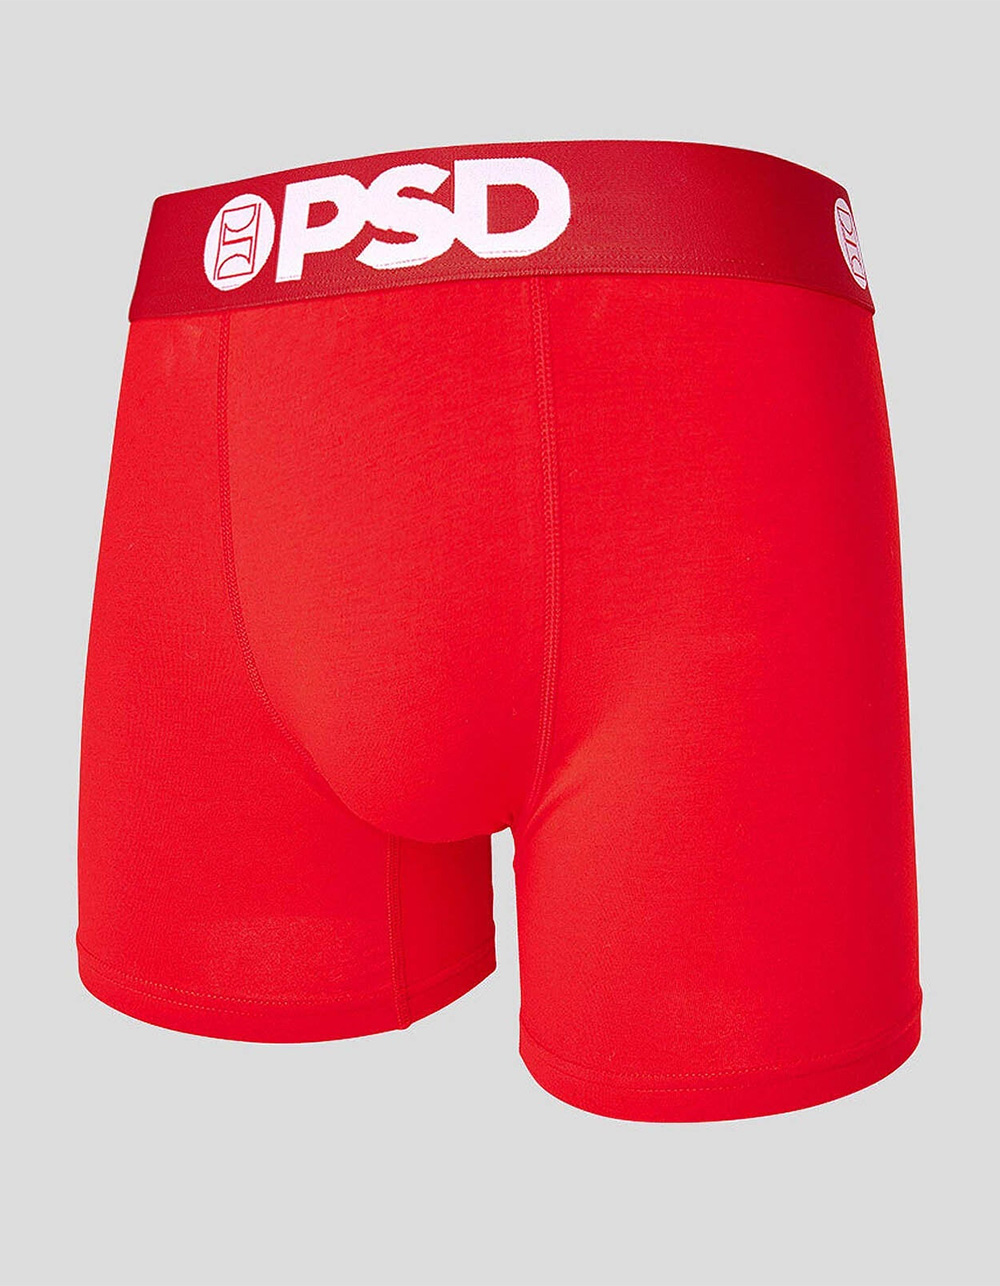 Dickies Men's Boxer Briefs Cotton Underwear (5 Pack) Reds